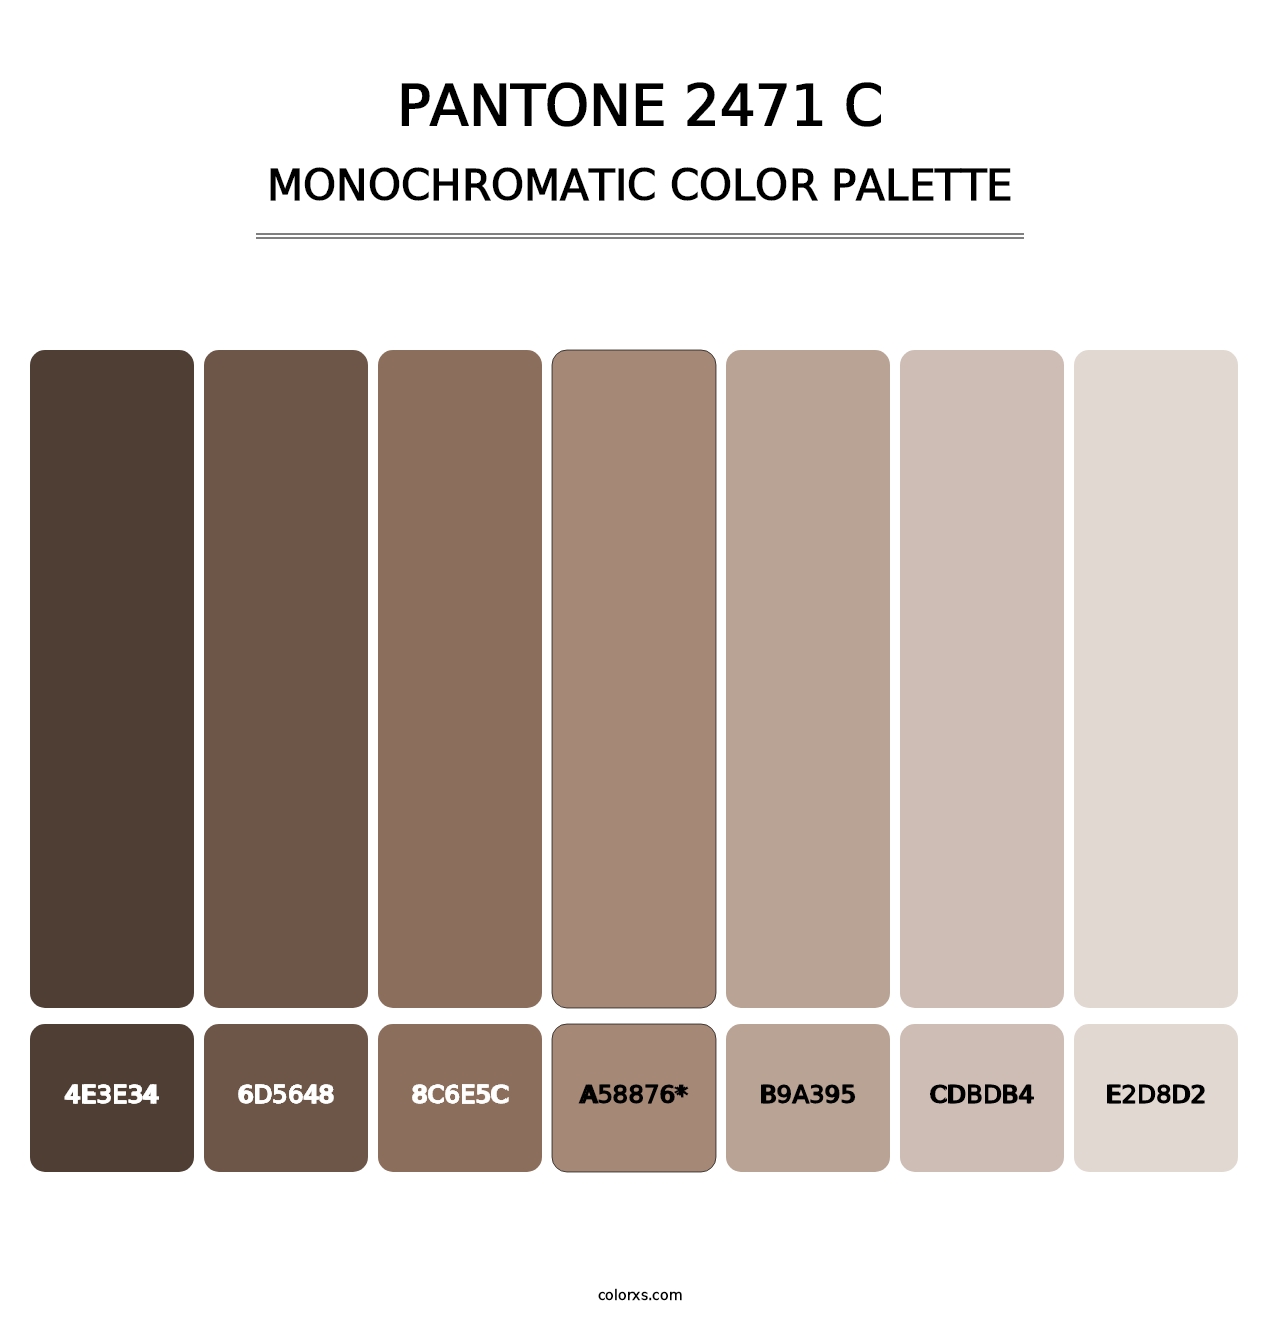 PANTONE 2471 C - Monochromatic Color Palette